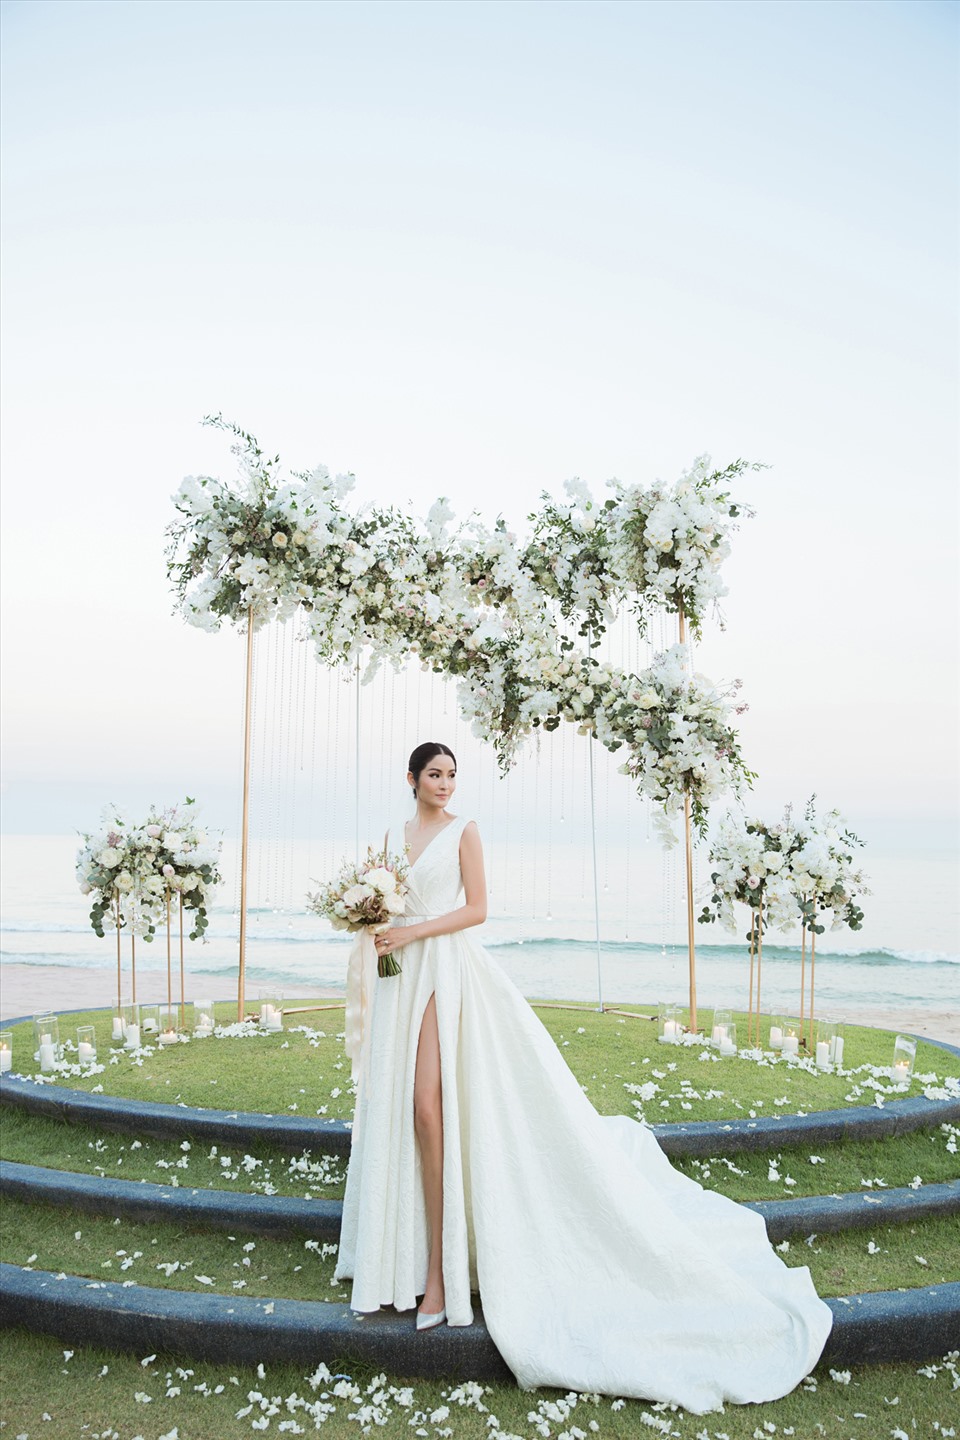 Nhà thiết kế Đỗ Mạnh Cường là người chịu trách nhiệm thực hiện váy cưới trong ngày trọng đại của Hoa hậu Thái Lan. Ảnh: Huy Nguyễn